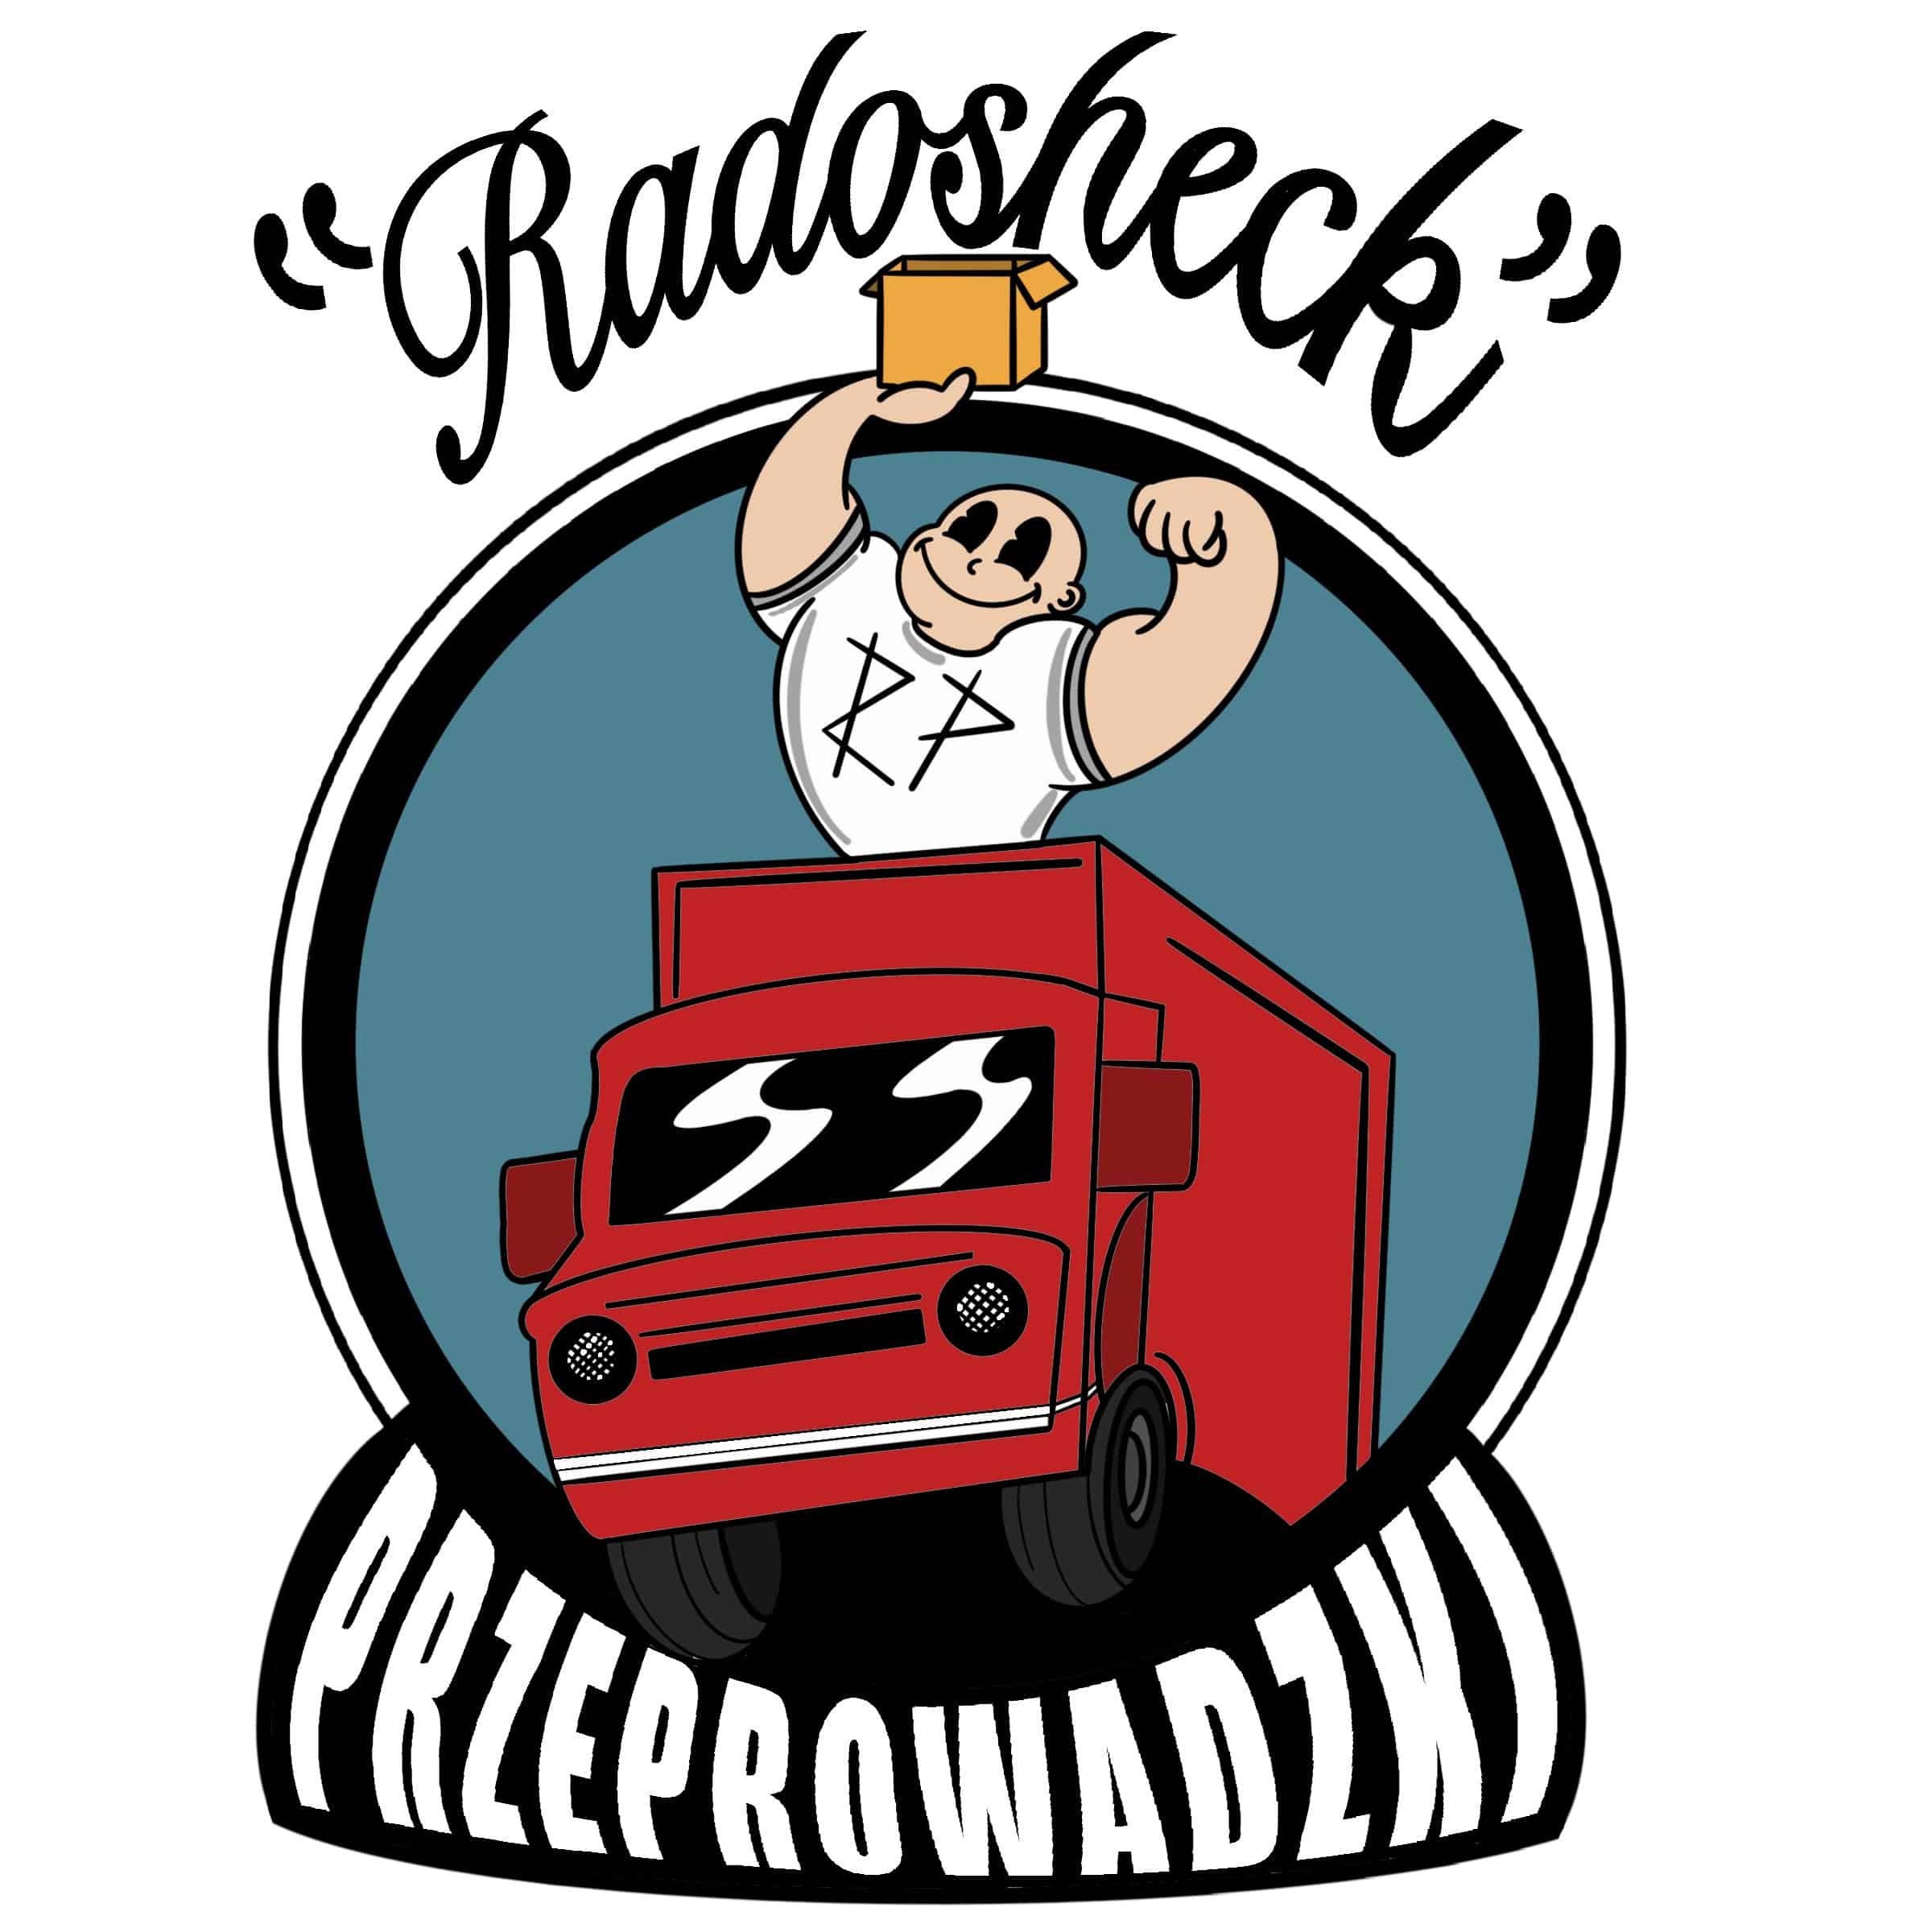 radosheck przeprowadzki logo